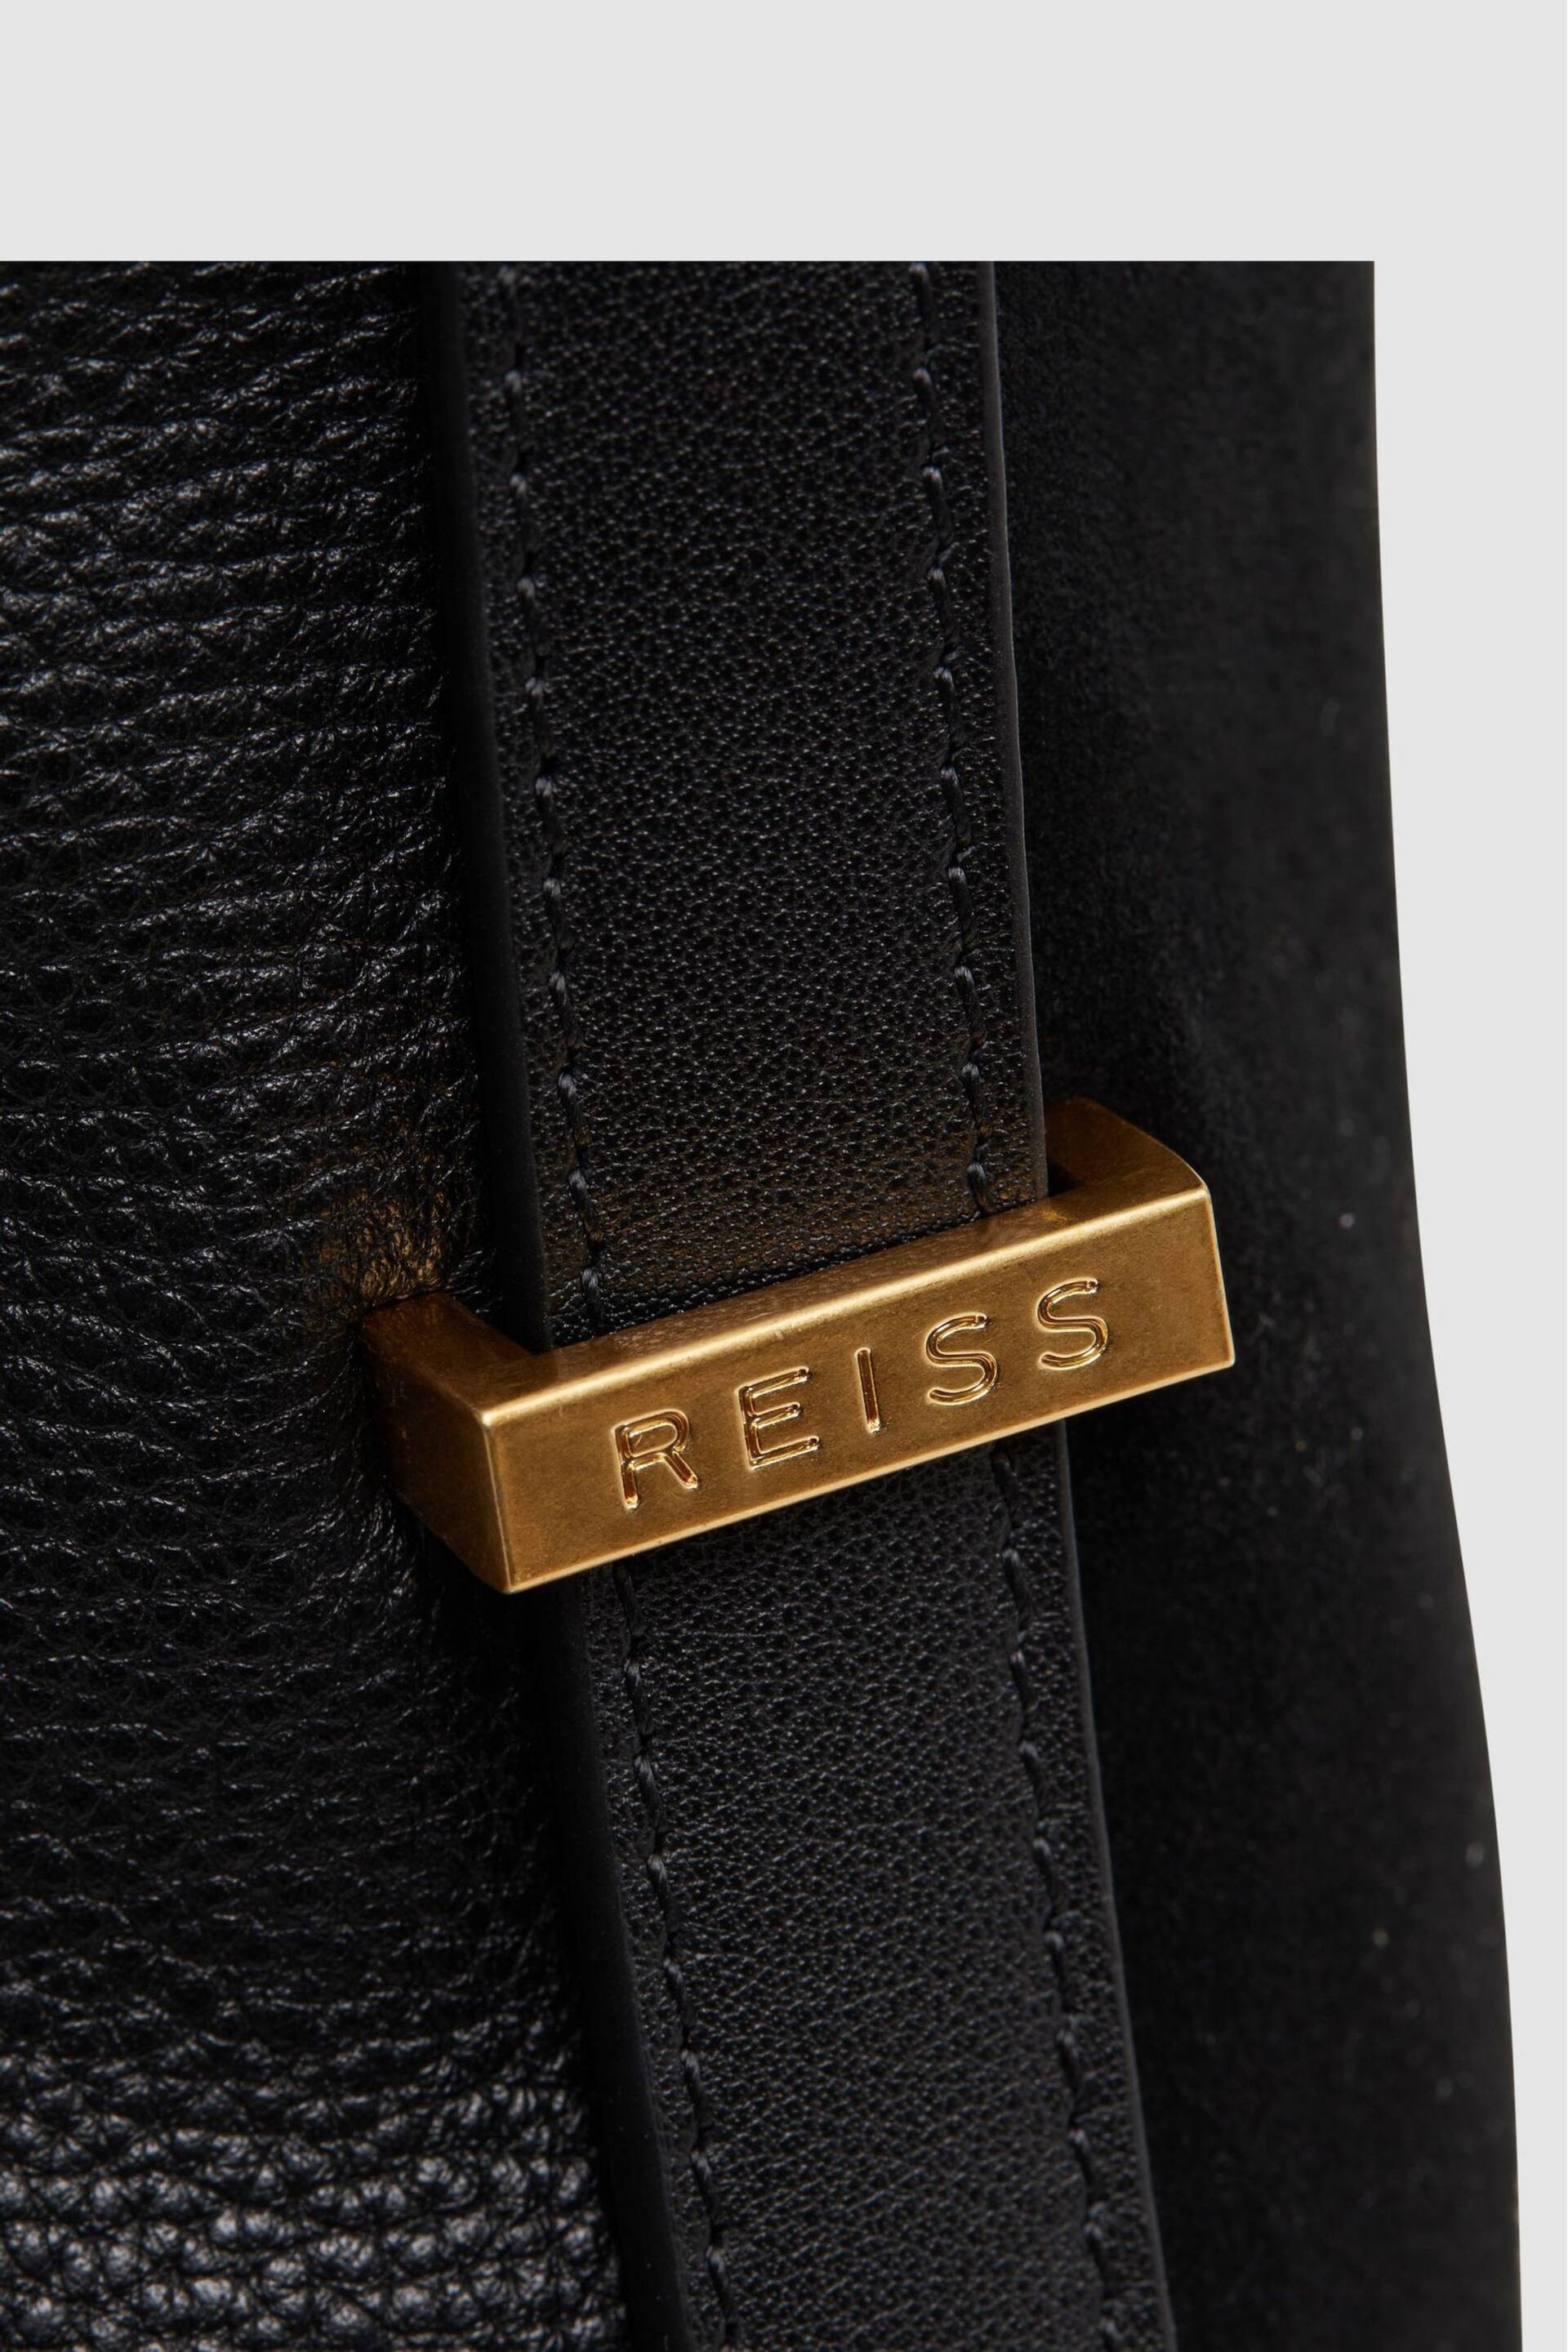 Reiss Black Vigo Leather Suede Handbag - Image 6 of 6